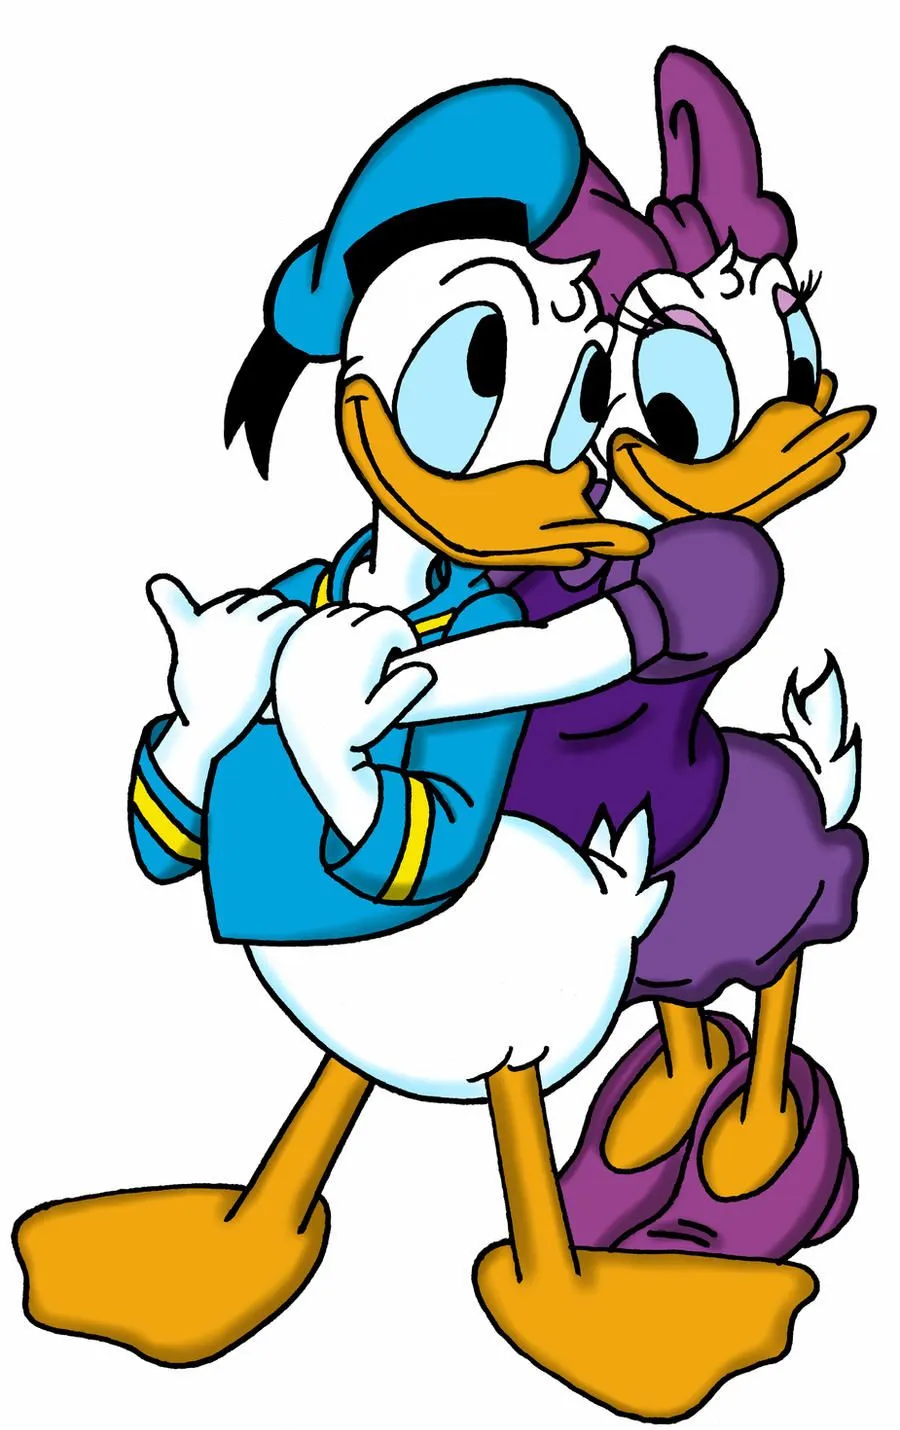 Donald And Daisy Love by ~dgtrekker on deviantART